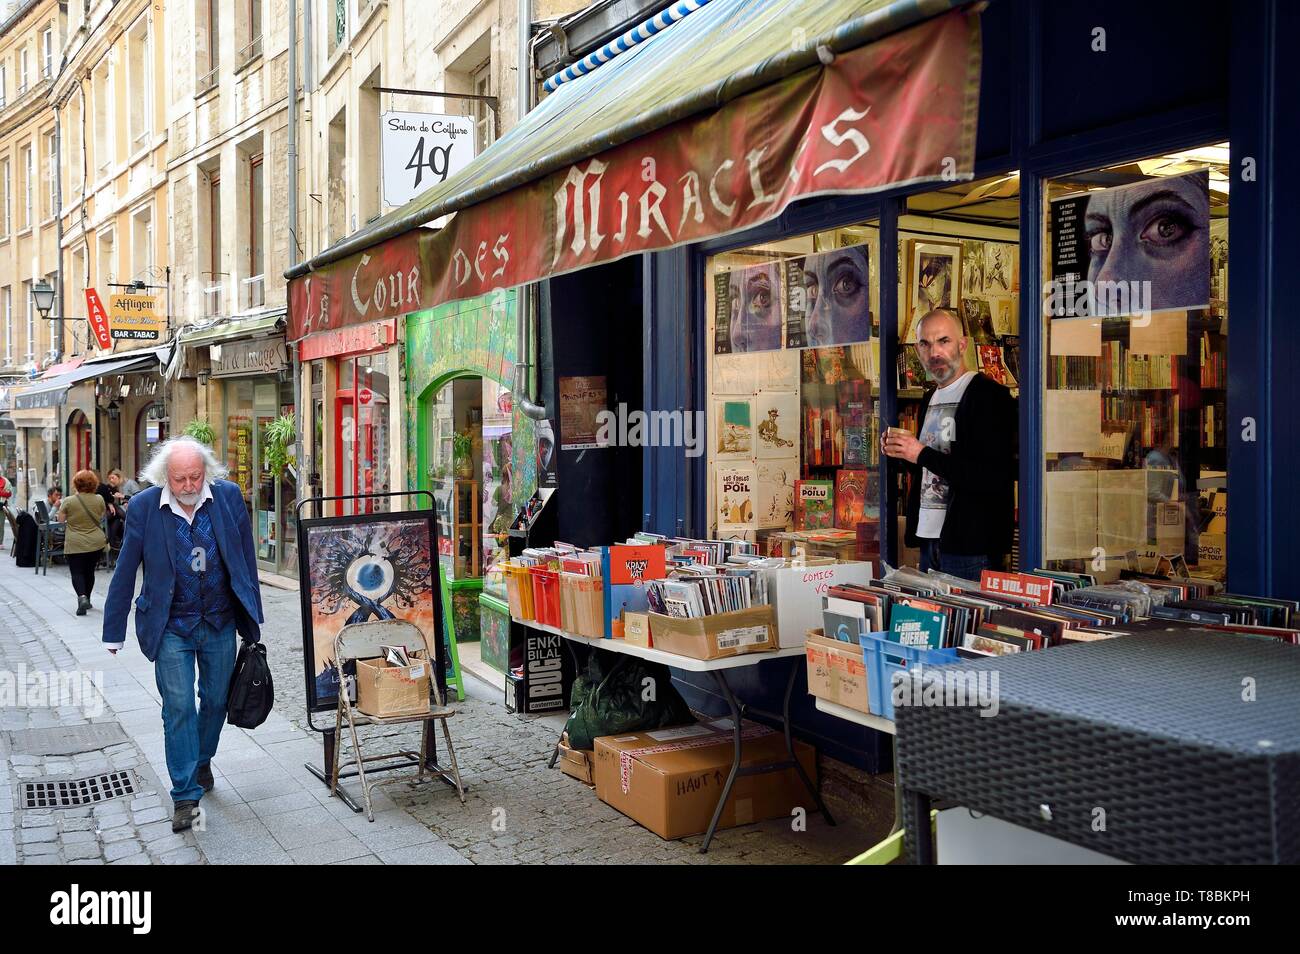 France, Calvados, Caen, bookstore rue Froide Stock Photo